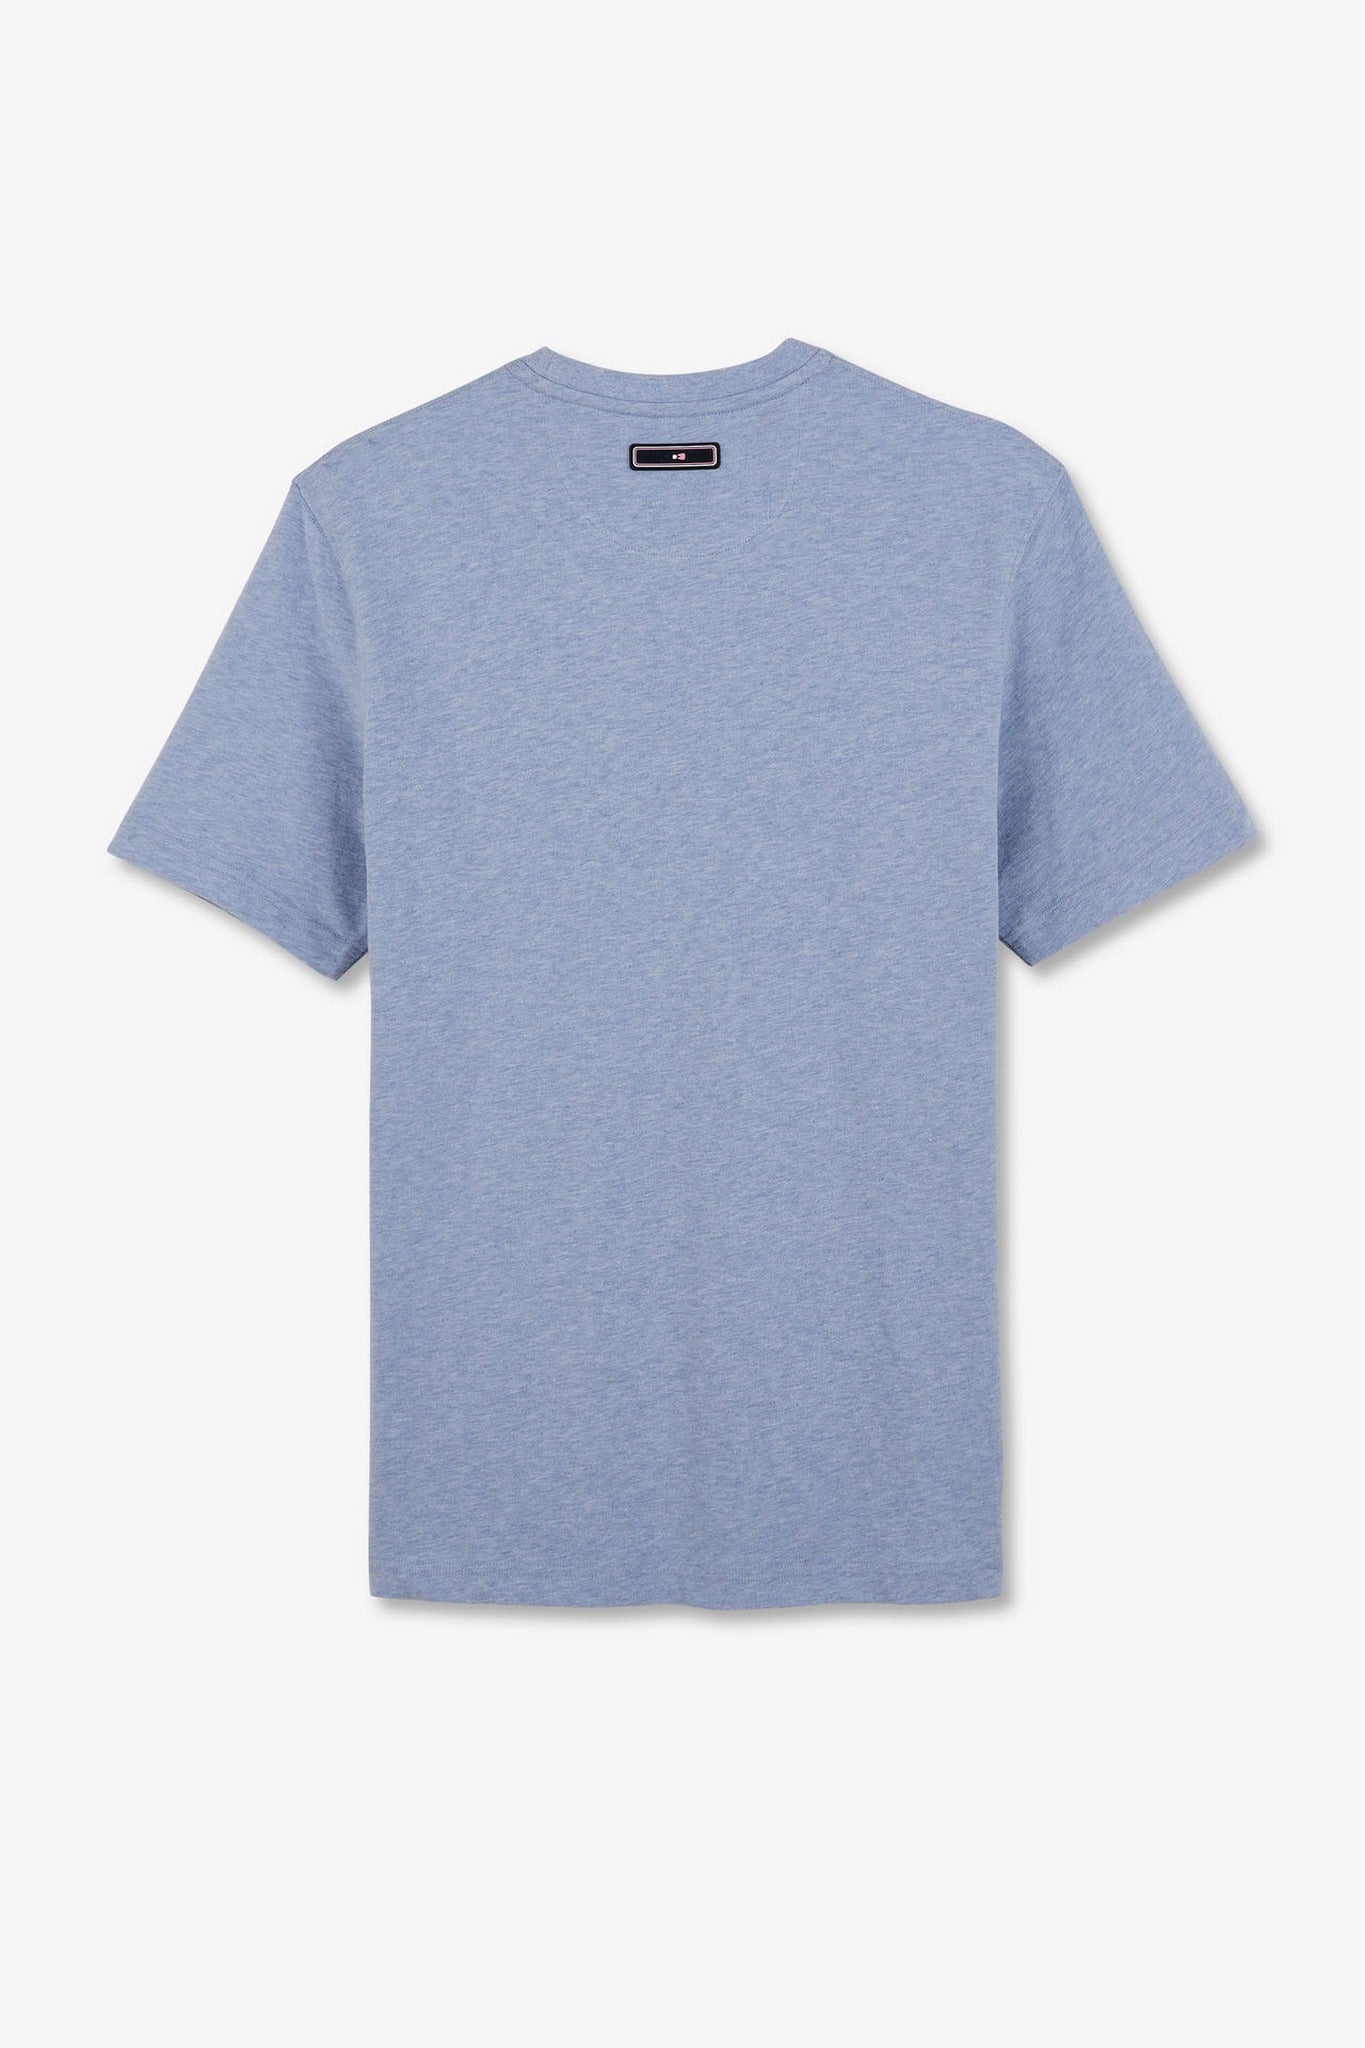 T-shirt bleu clair à double inscription Eden Park